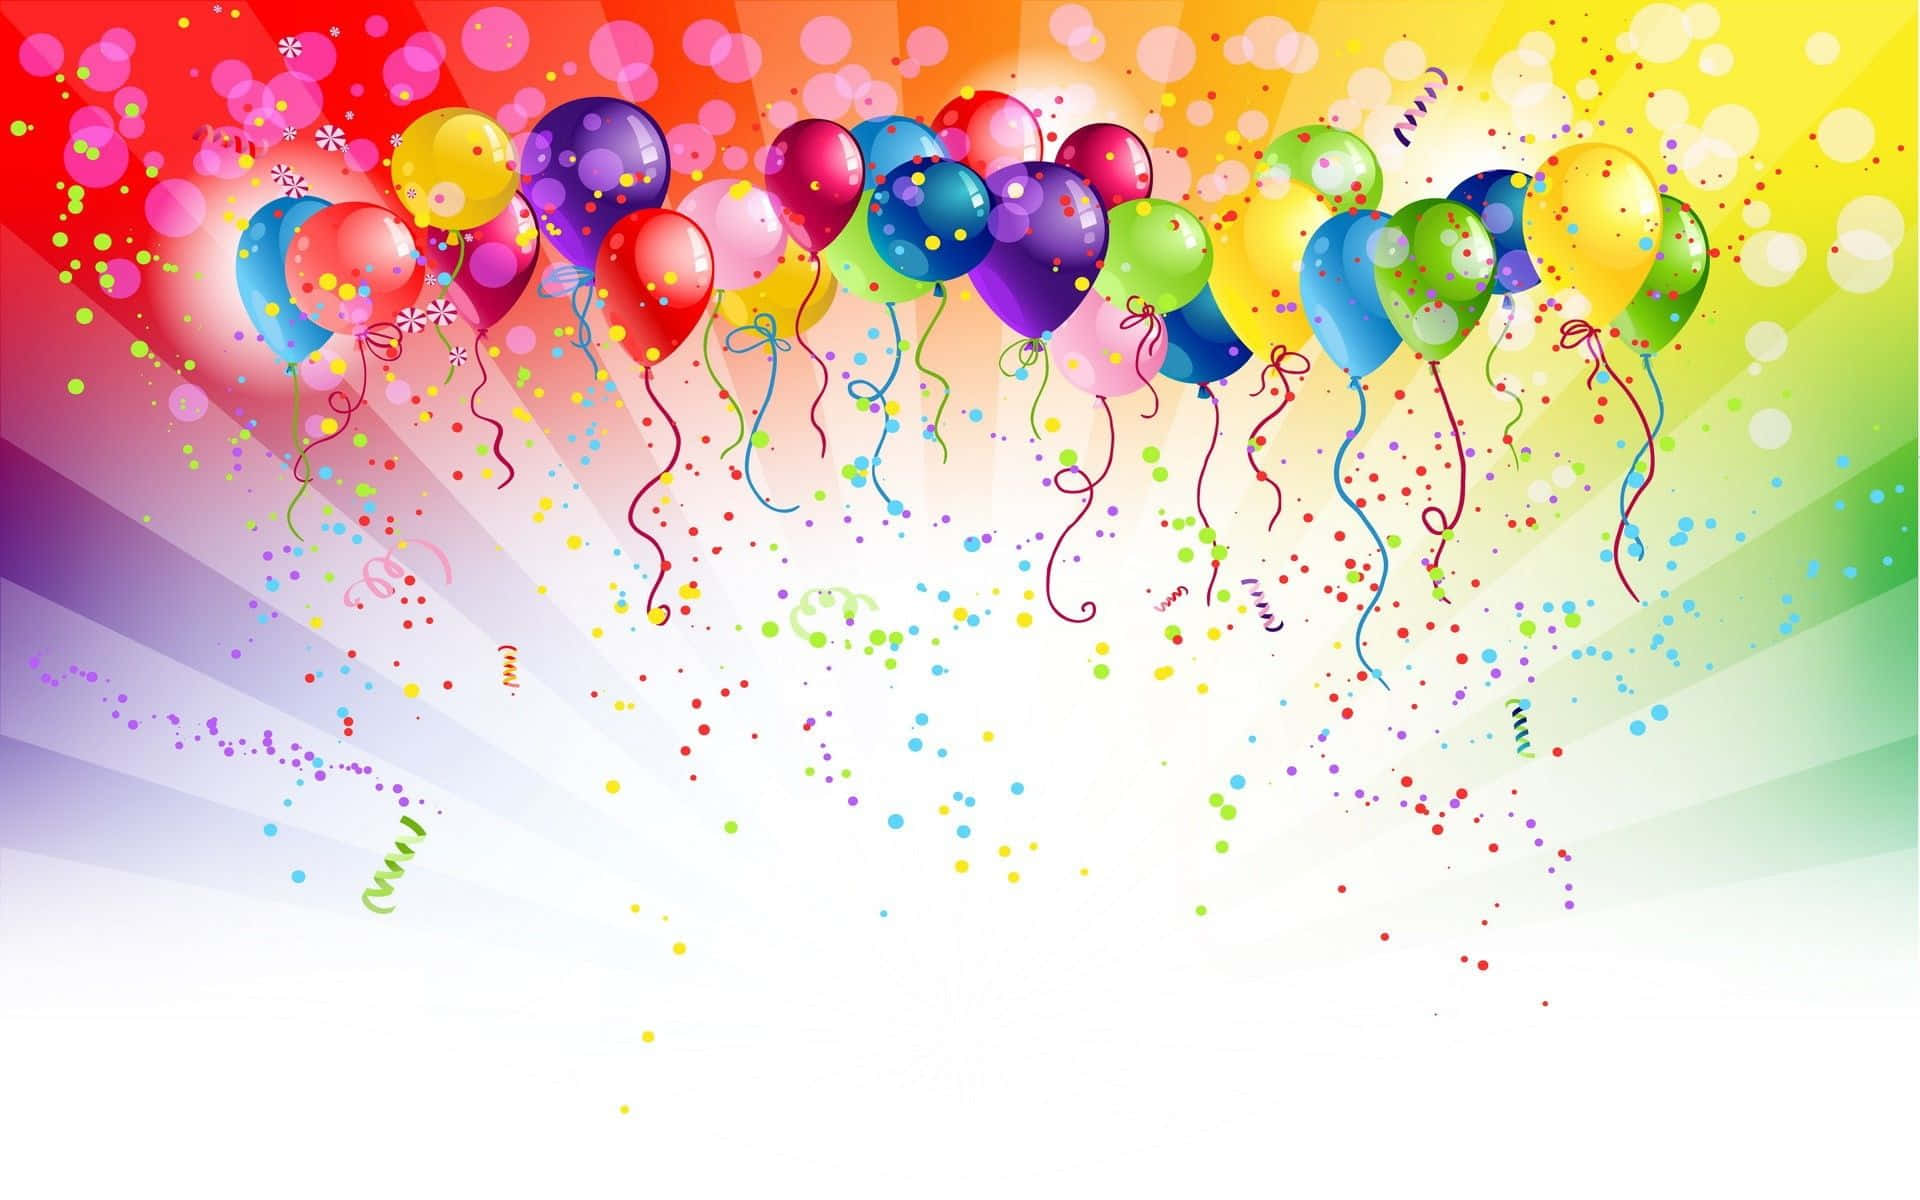 Fundocom Modelo De Balões De Aniversário E Confetes.